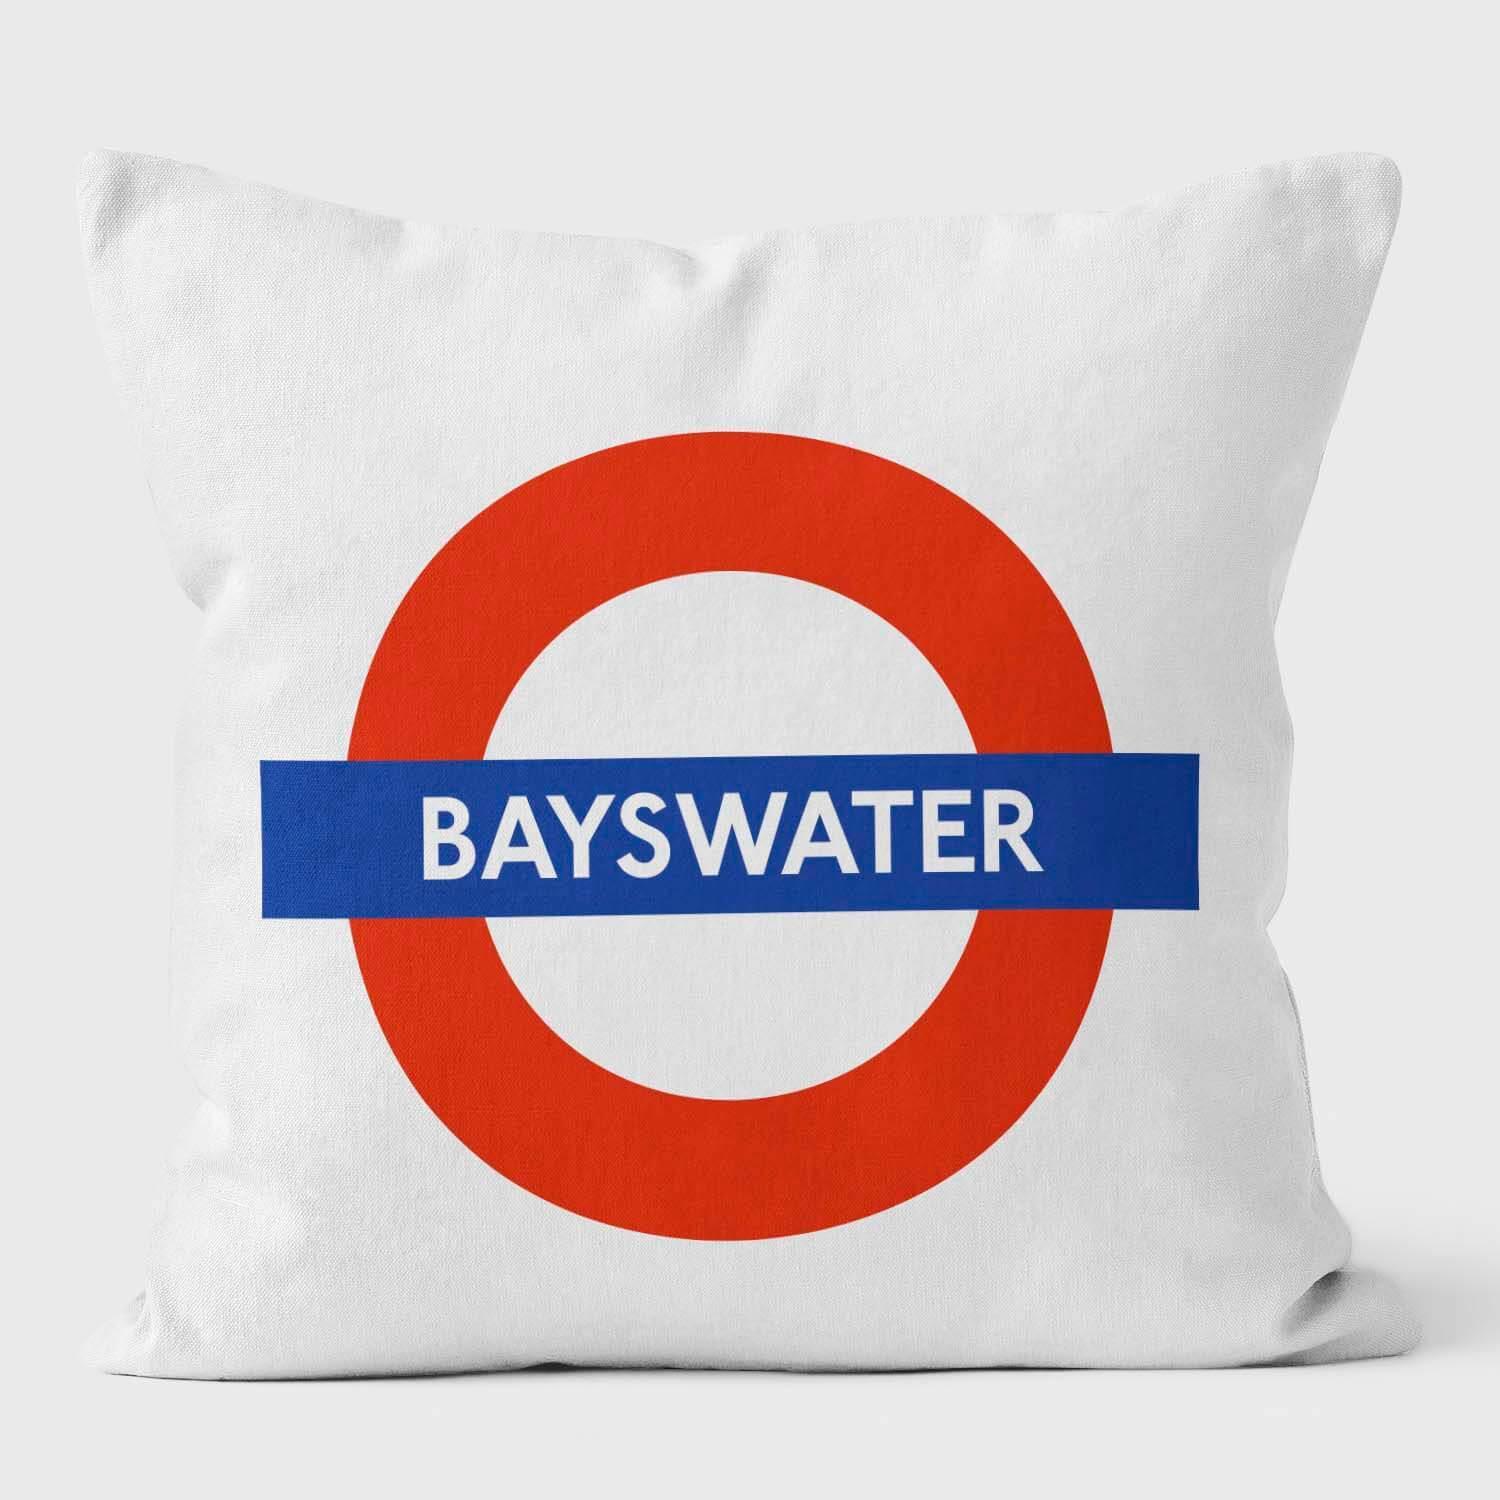 Bayswater London Underground Tube Station Roundel Cushion - Handmade Cushions UK - WeLoveCushions